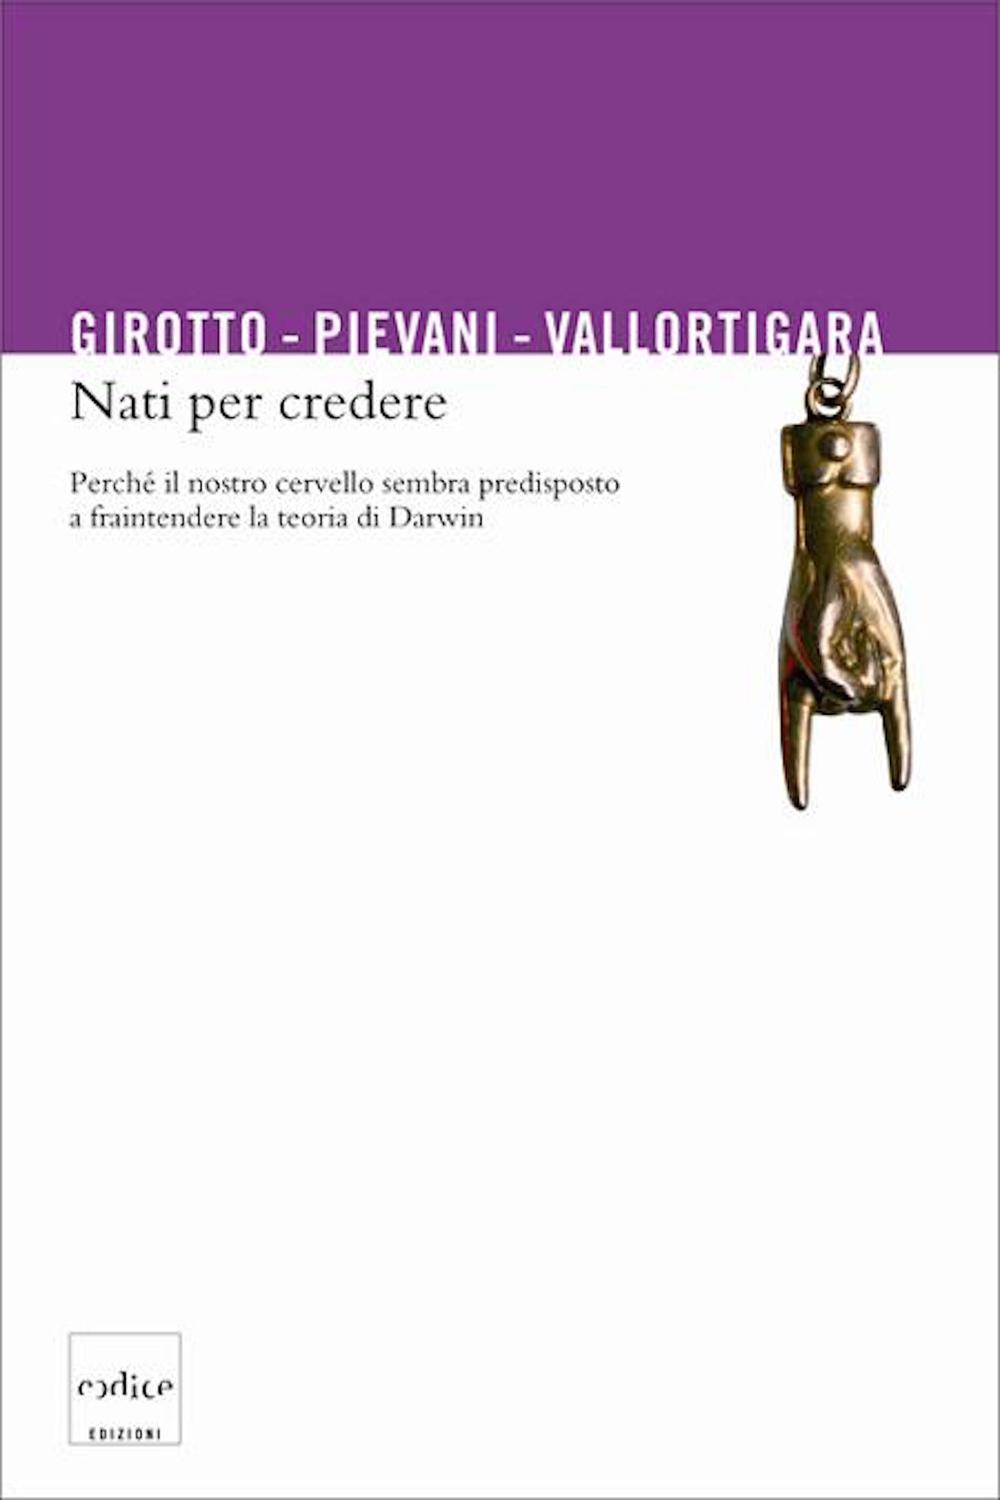 Nati per credere - Vittorio Girotto, Telmo Pievani, Giorgio Vallortigara